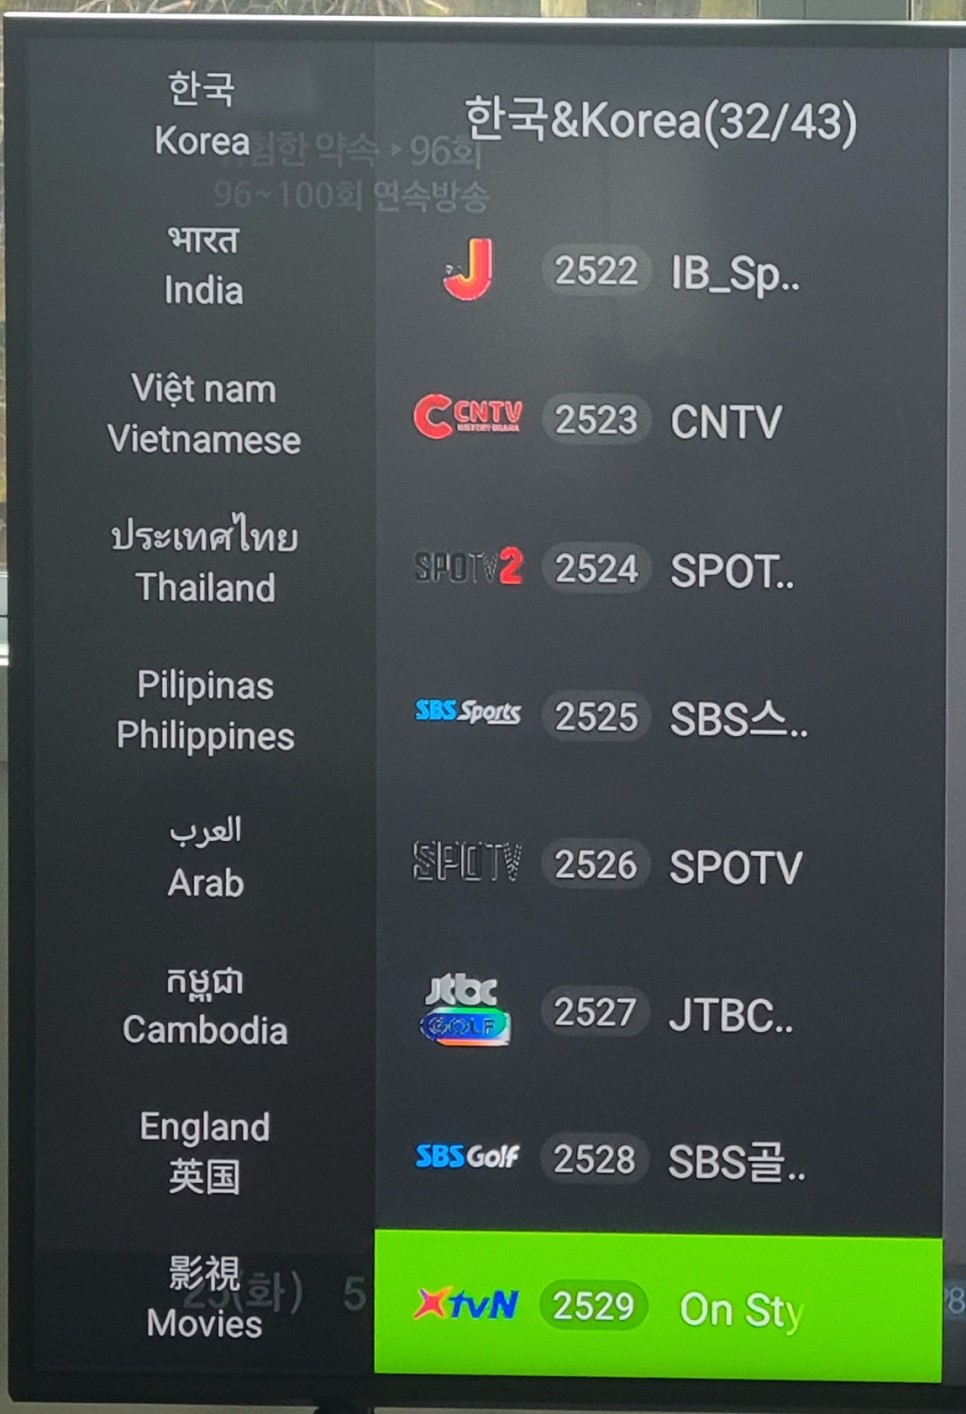 รีวิวผู้ใช้ EVPAD 5P - ดูช่องทีวีเกาหลีจากต่างประเทศแบบเรียลไทม์